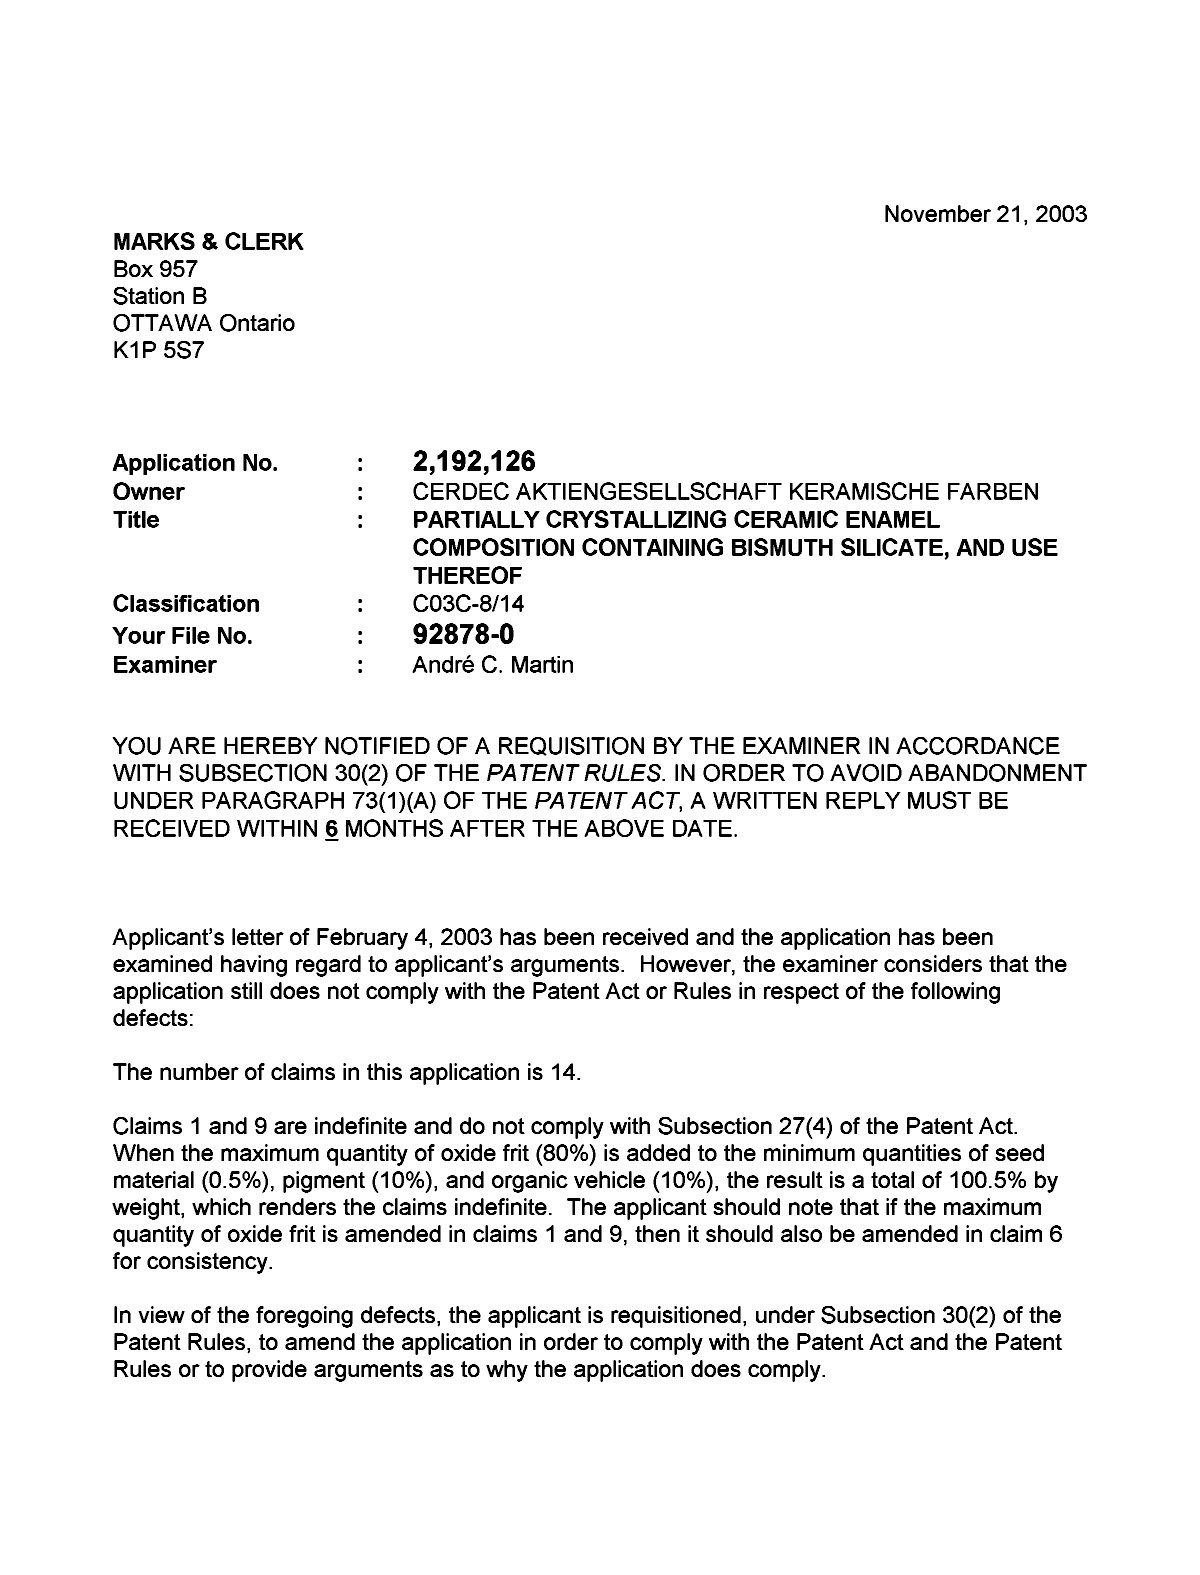 Document de brevet canadien 2192126. Poursuite-Amendment 20031121. Image 1 de 2